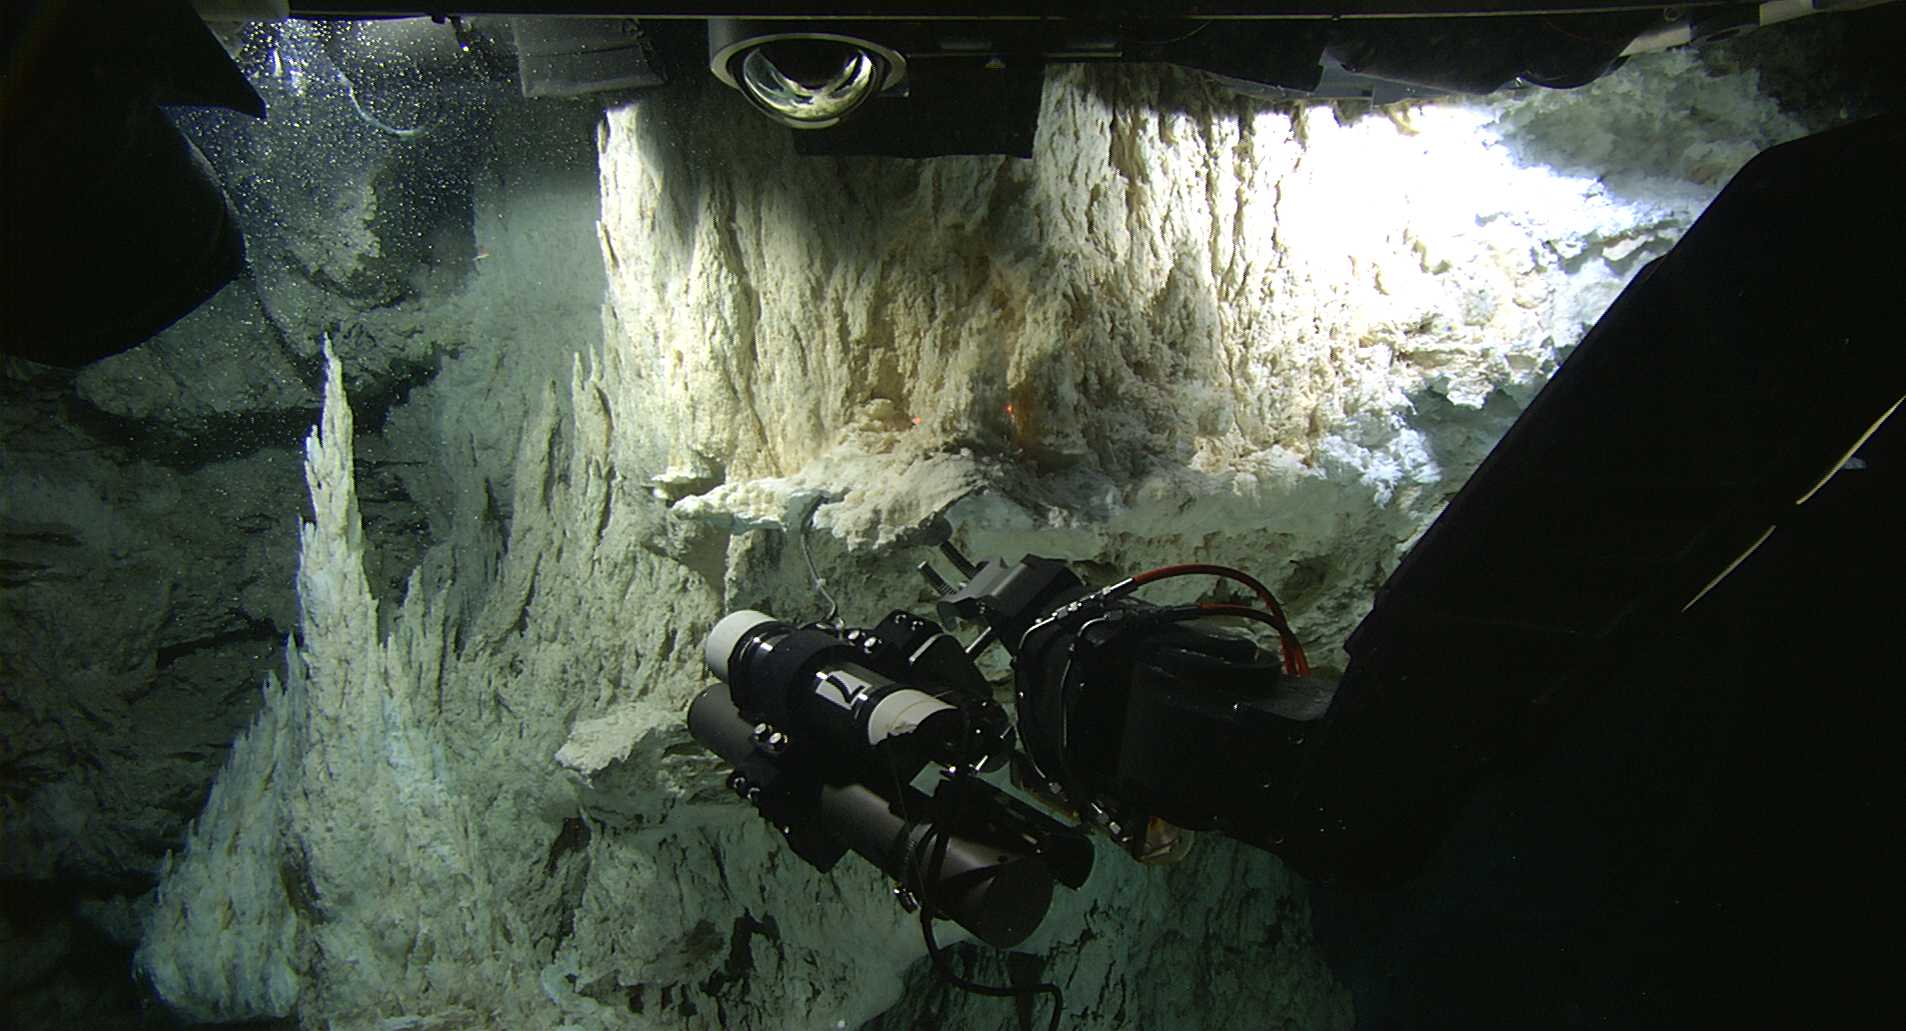 Le champ de cheminées hydrothermales découvert en décembre 2000 dans l'Atlantique nord. © Washington University